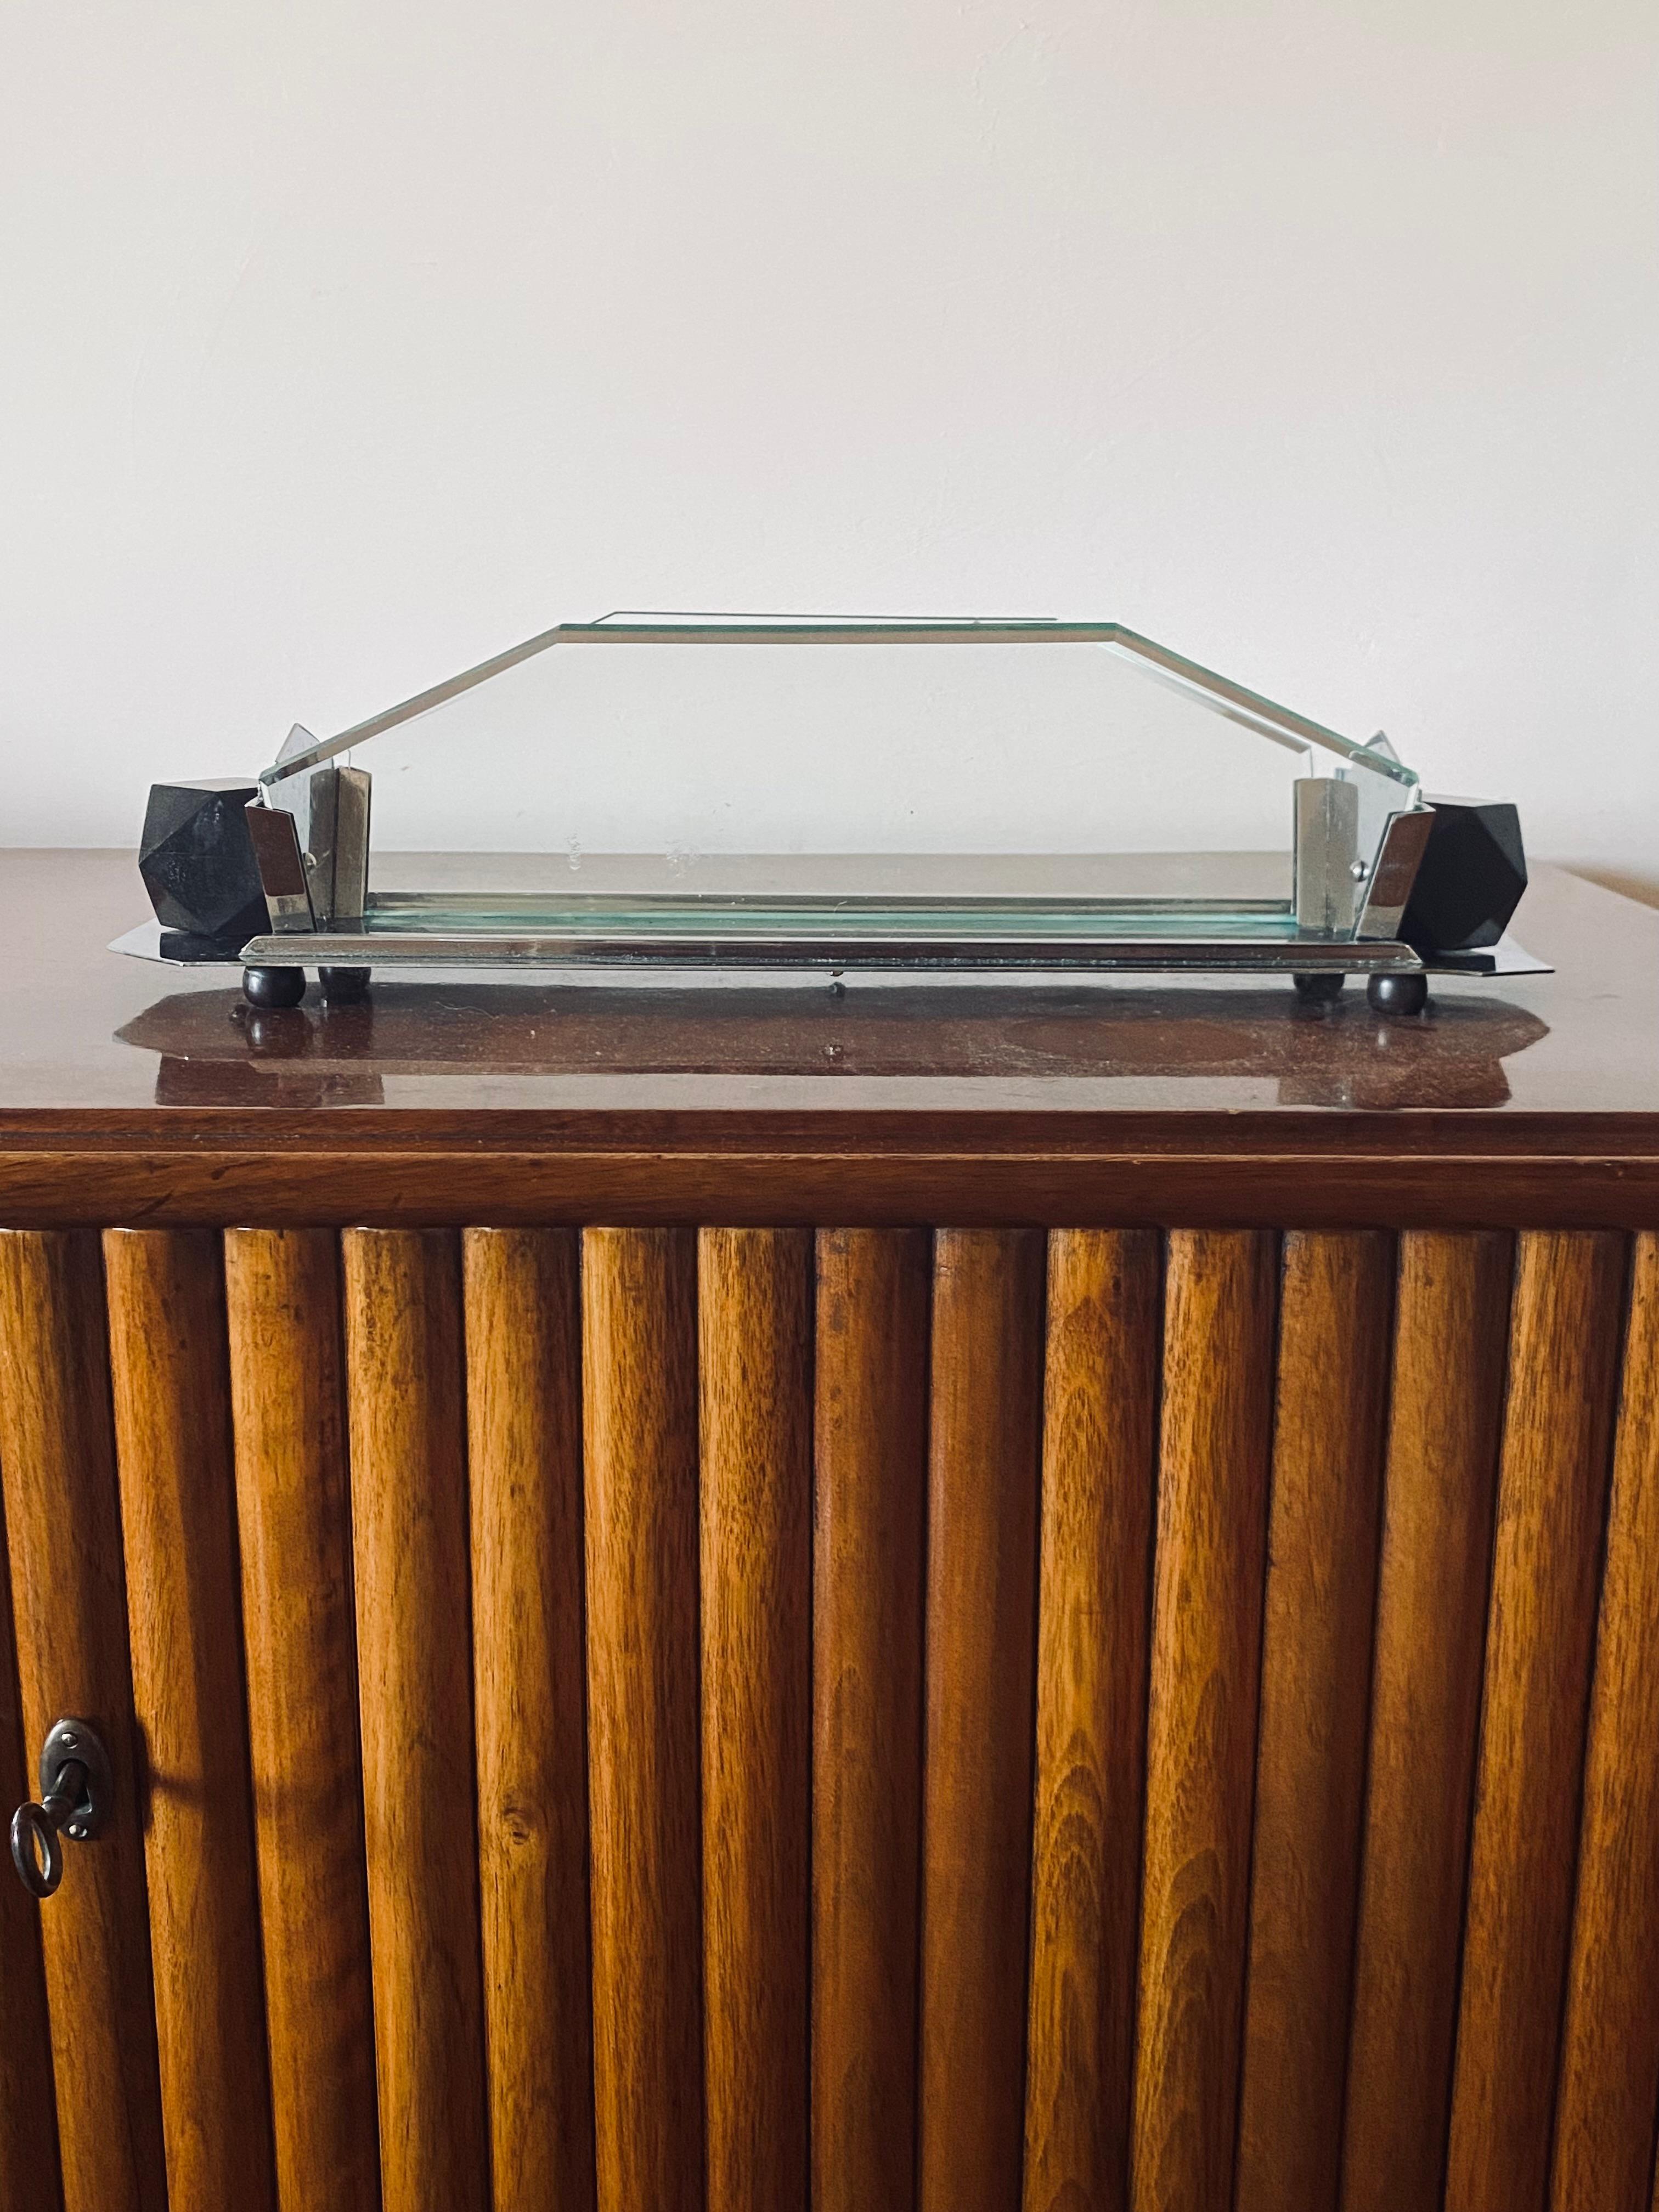 Centre de table Art Déco / vide poche

France 1930- 1940

verre, bois, métal

11 cm H

44,5 x 18 cm

Condit : très bien, conforme à l'âge et à l'utilisation. Petite bosse à peine visible, voir la dernière photo.